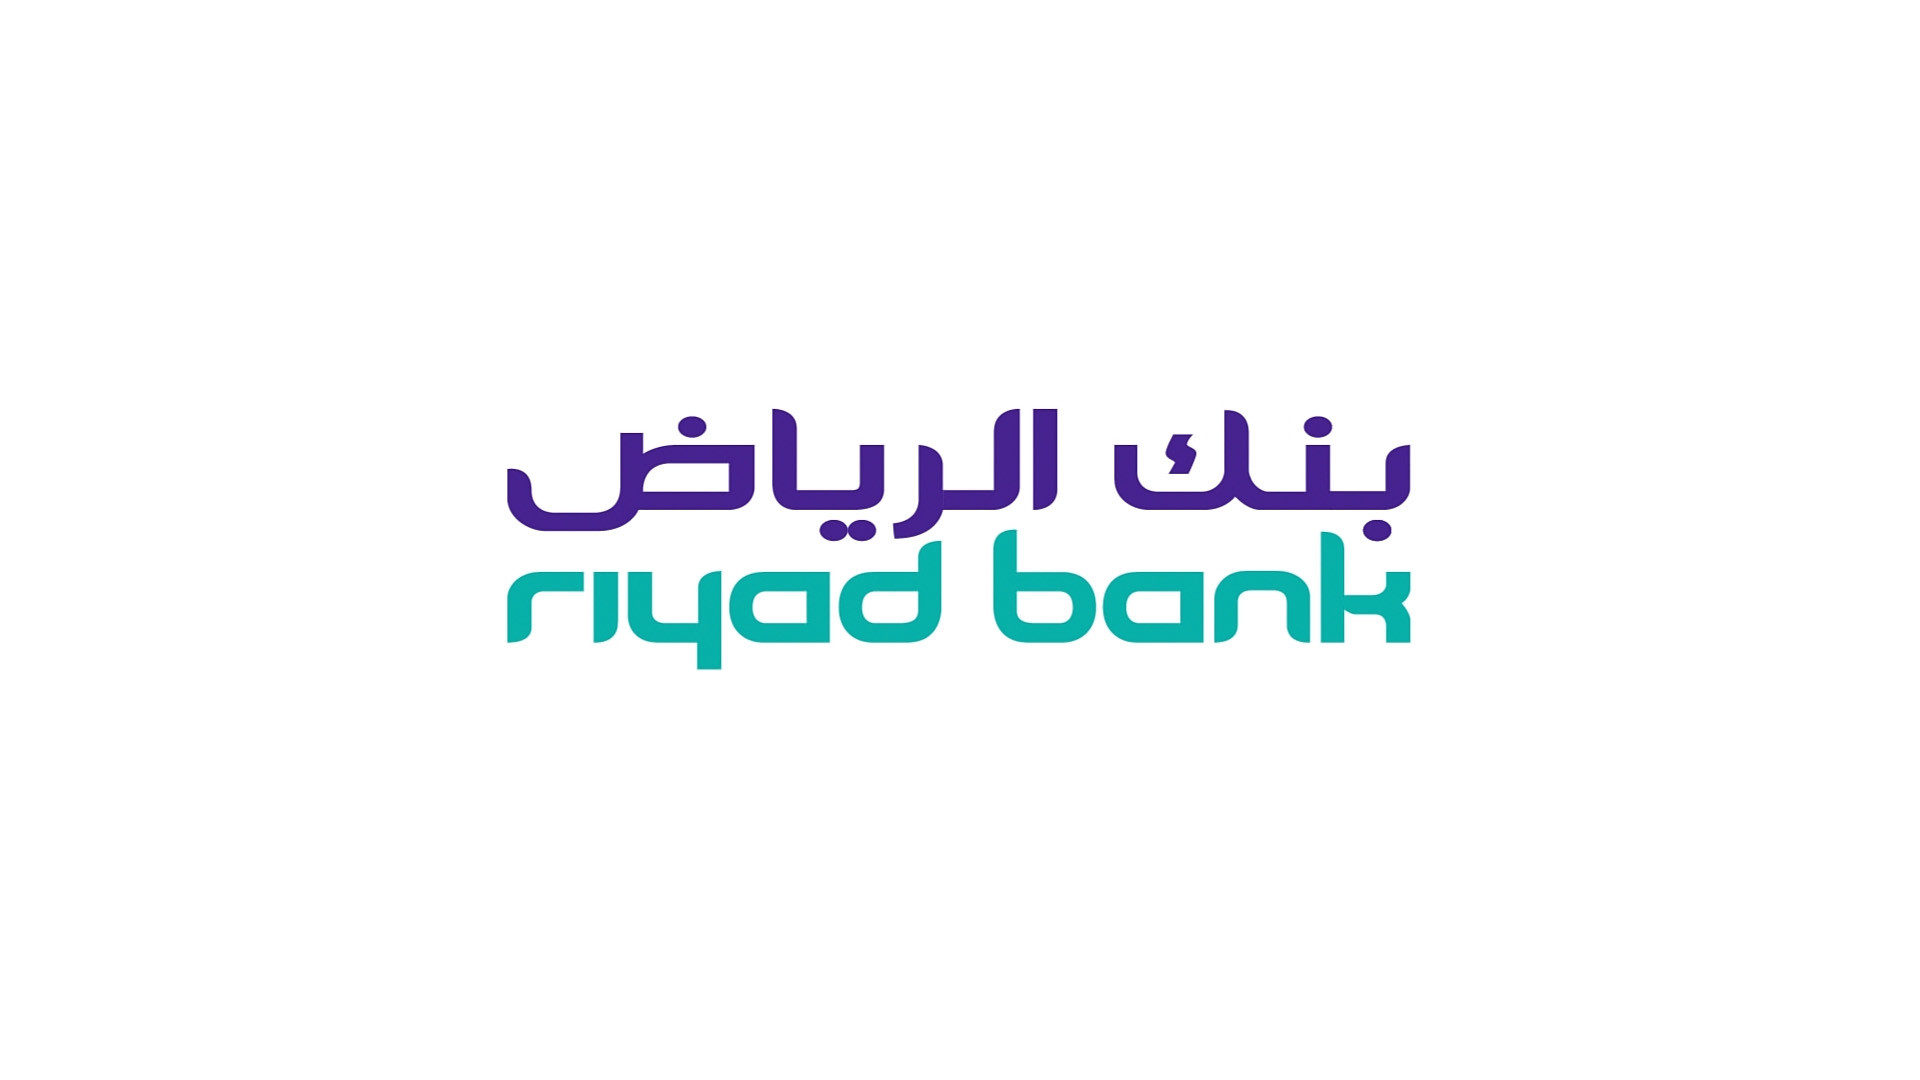 Riyad bank corporate